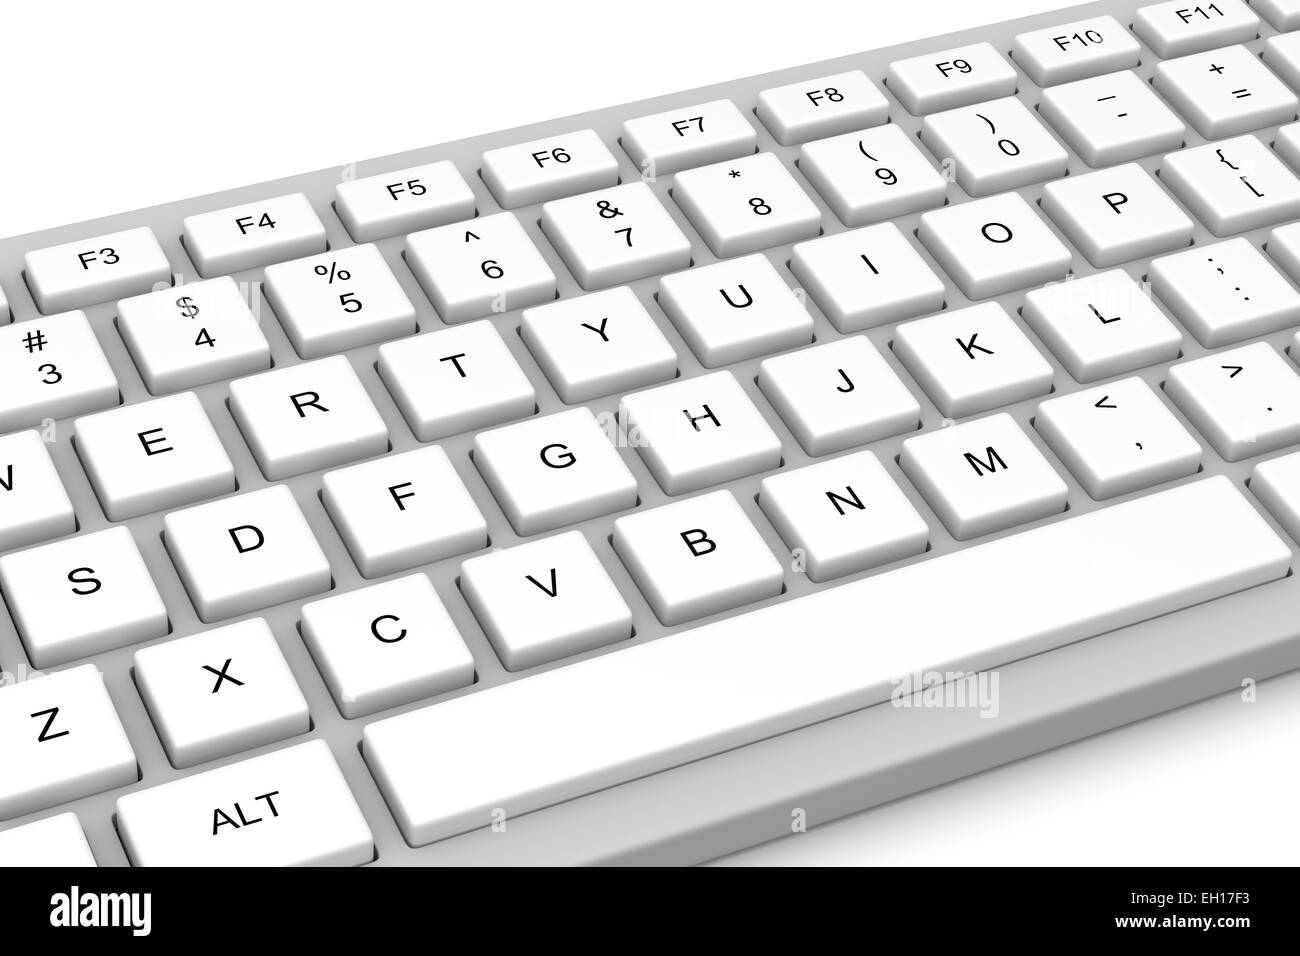 White Pc Keyboard Isolated on White Background Stock Photo